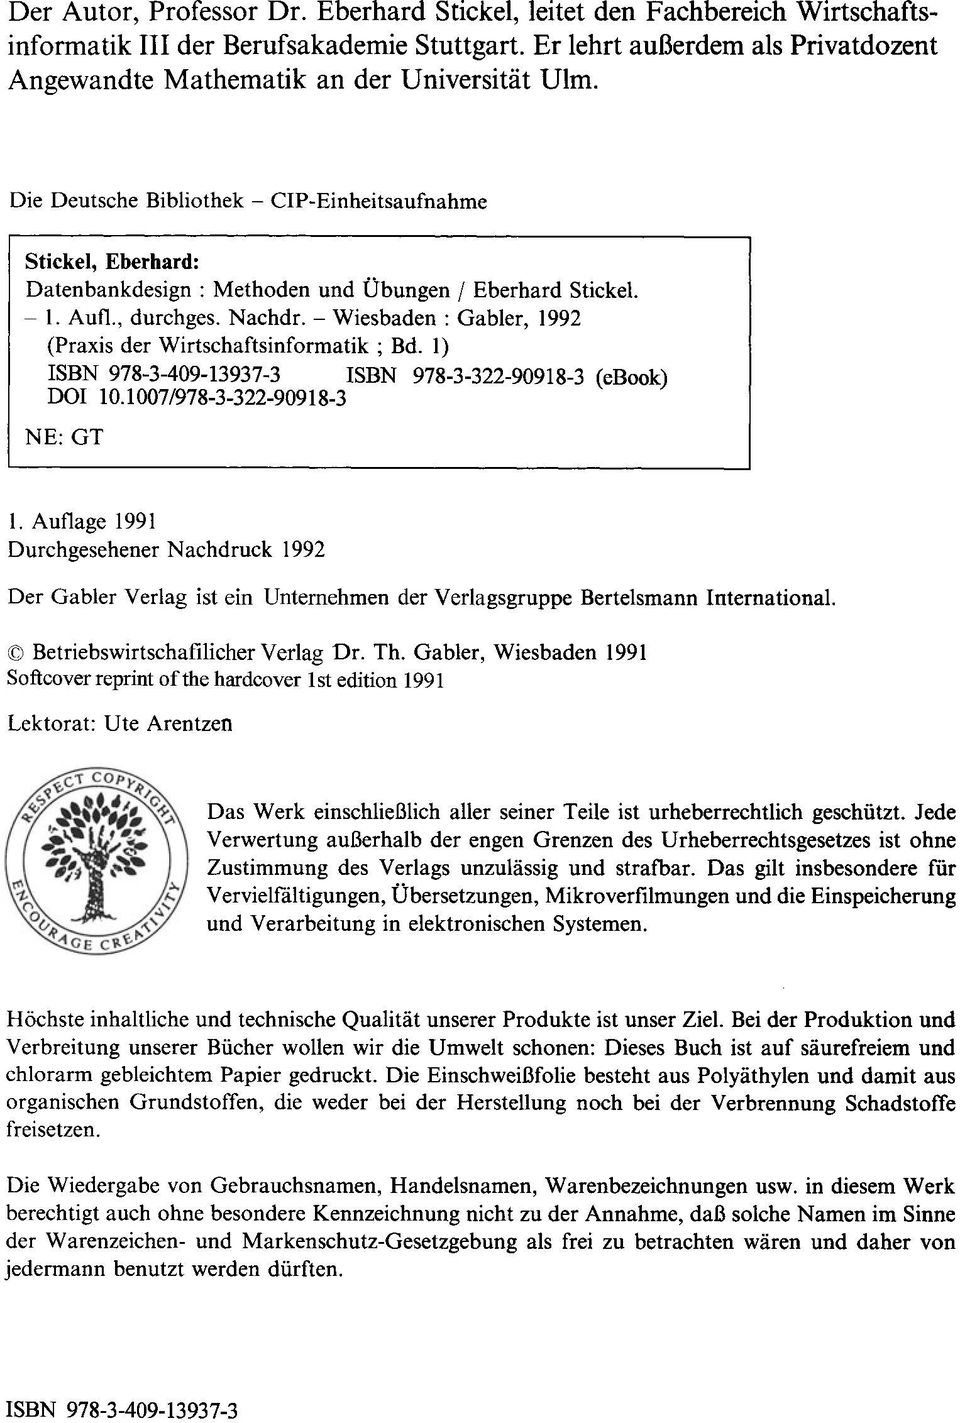 Die Deutsche Bibliothek - CIP-Einheitsaufnahme Stickel, Eberhard: Datenbankdesign : Methoden und Übungen I Eberhard Stickel. - 1. Aufl., durchges. Nachdr.